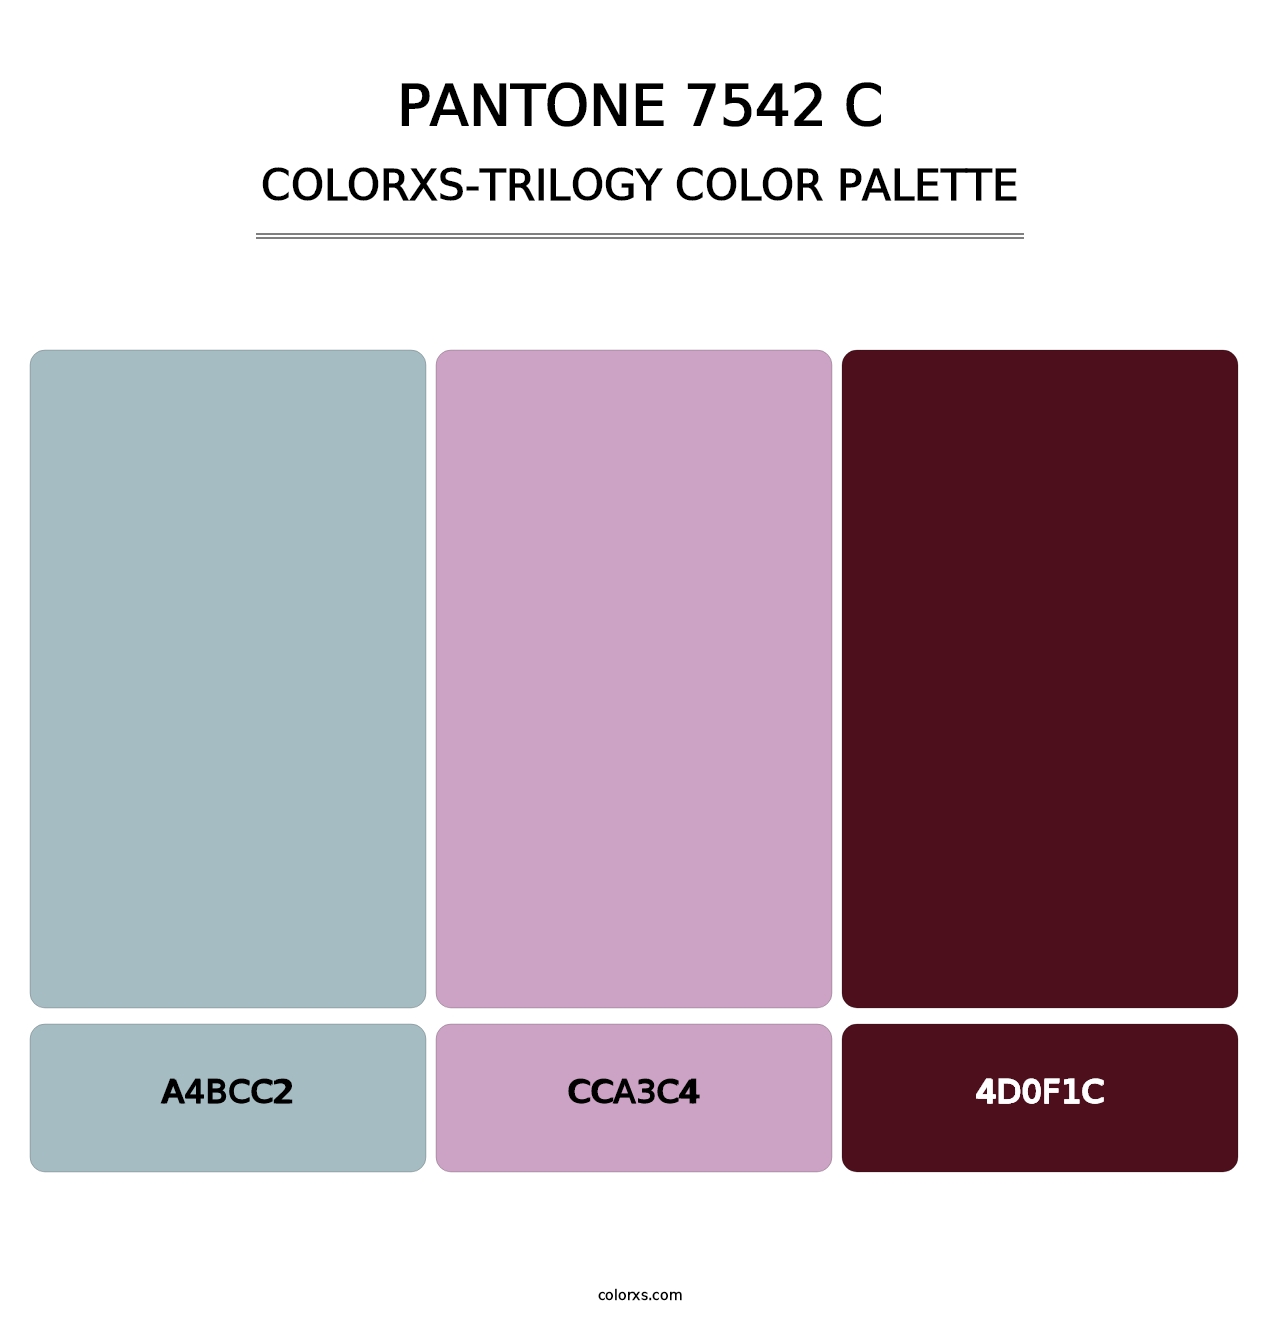 PANTONE 7542 C - Colorxs Trilogy Palette